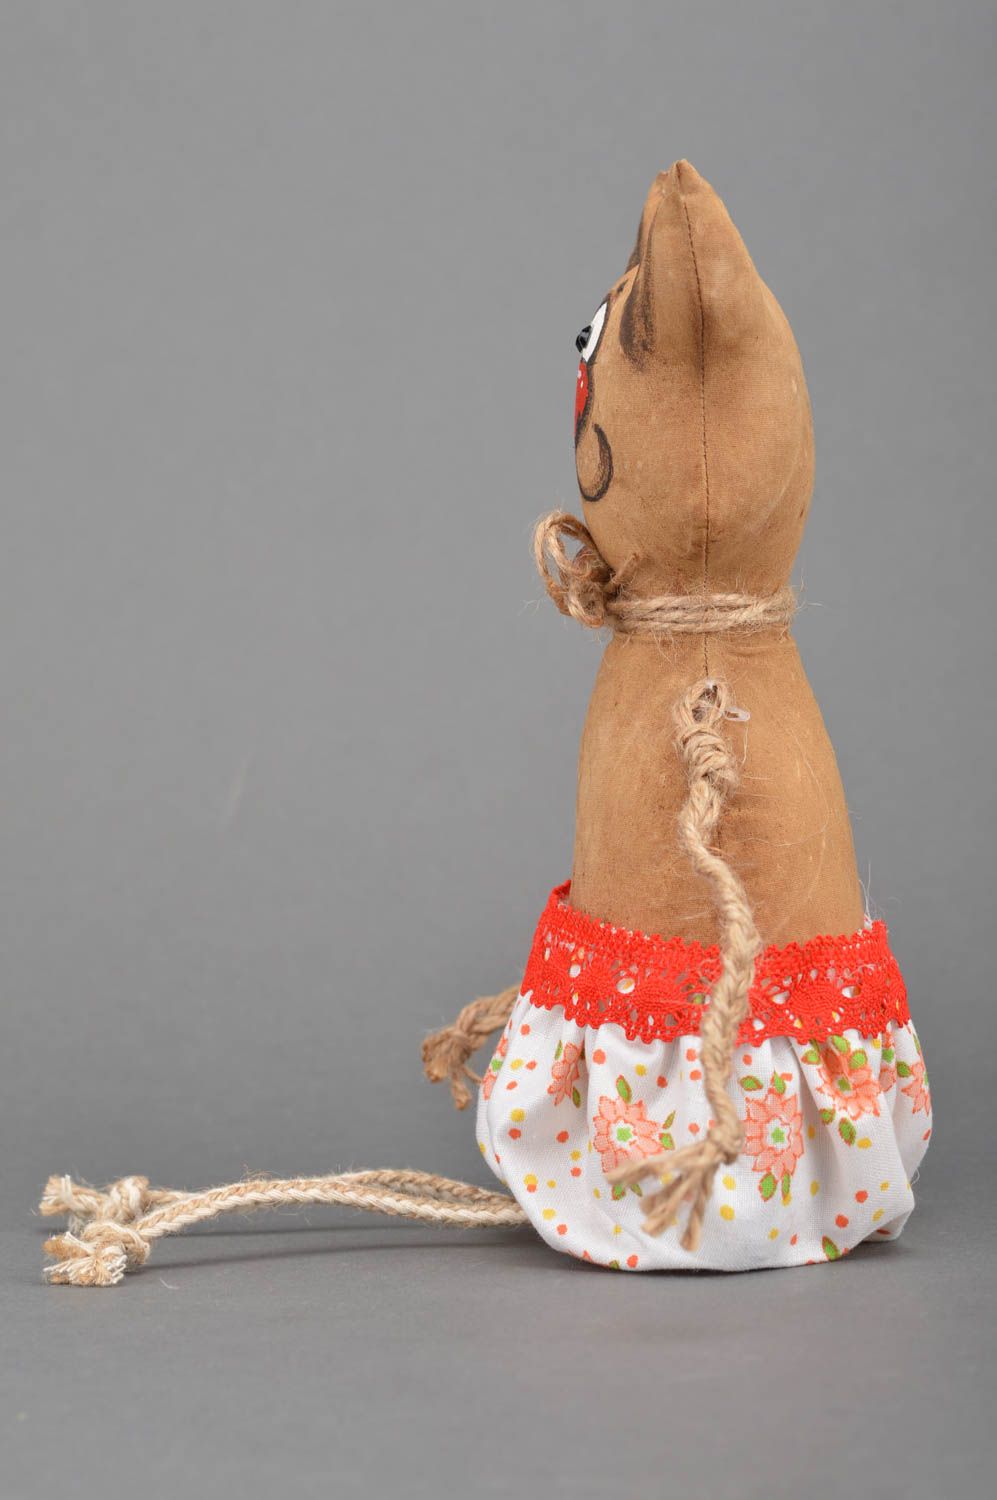 Интерьерная игрушка Кот из хлопка коричневый текстильный декор ручной работы фото 3